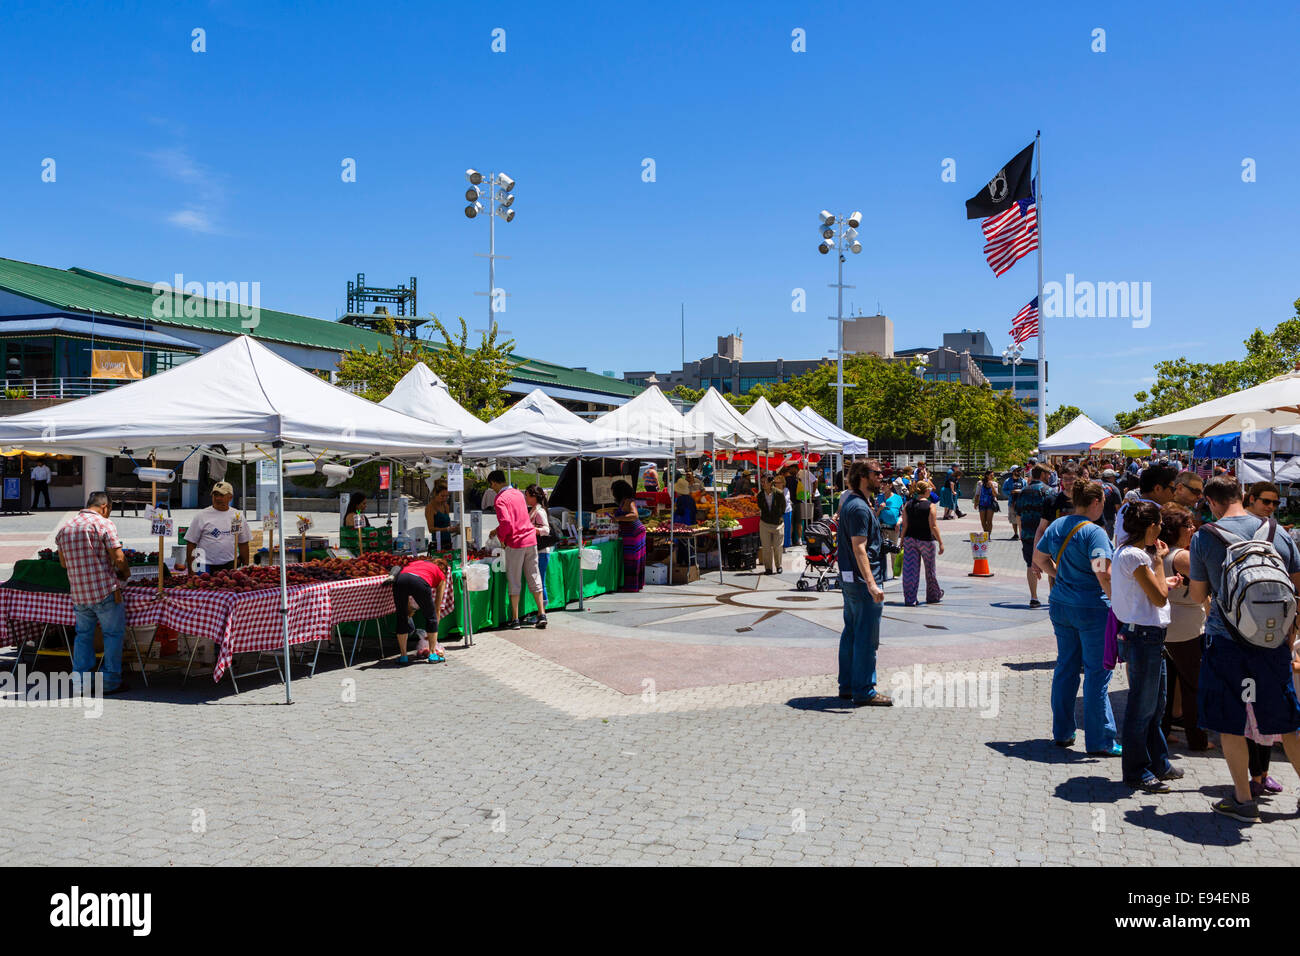 Les étals du marché le long des quais dans Jack London Square district, Oakland, Californie, USA Banque D'Images